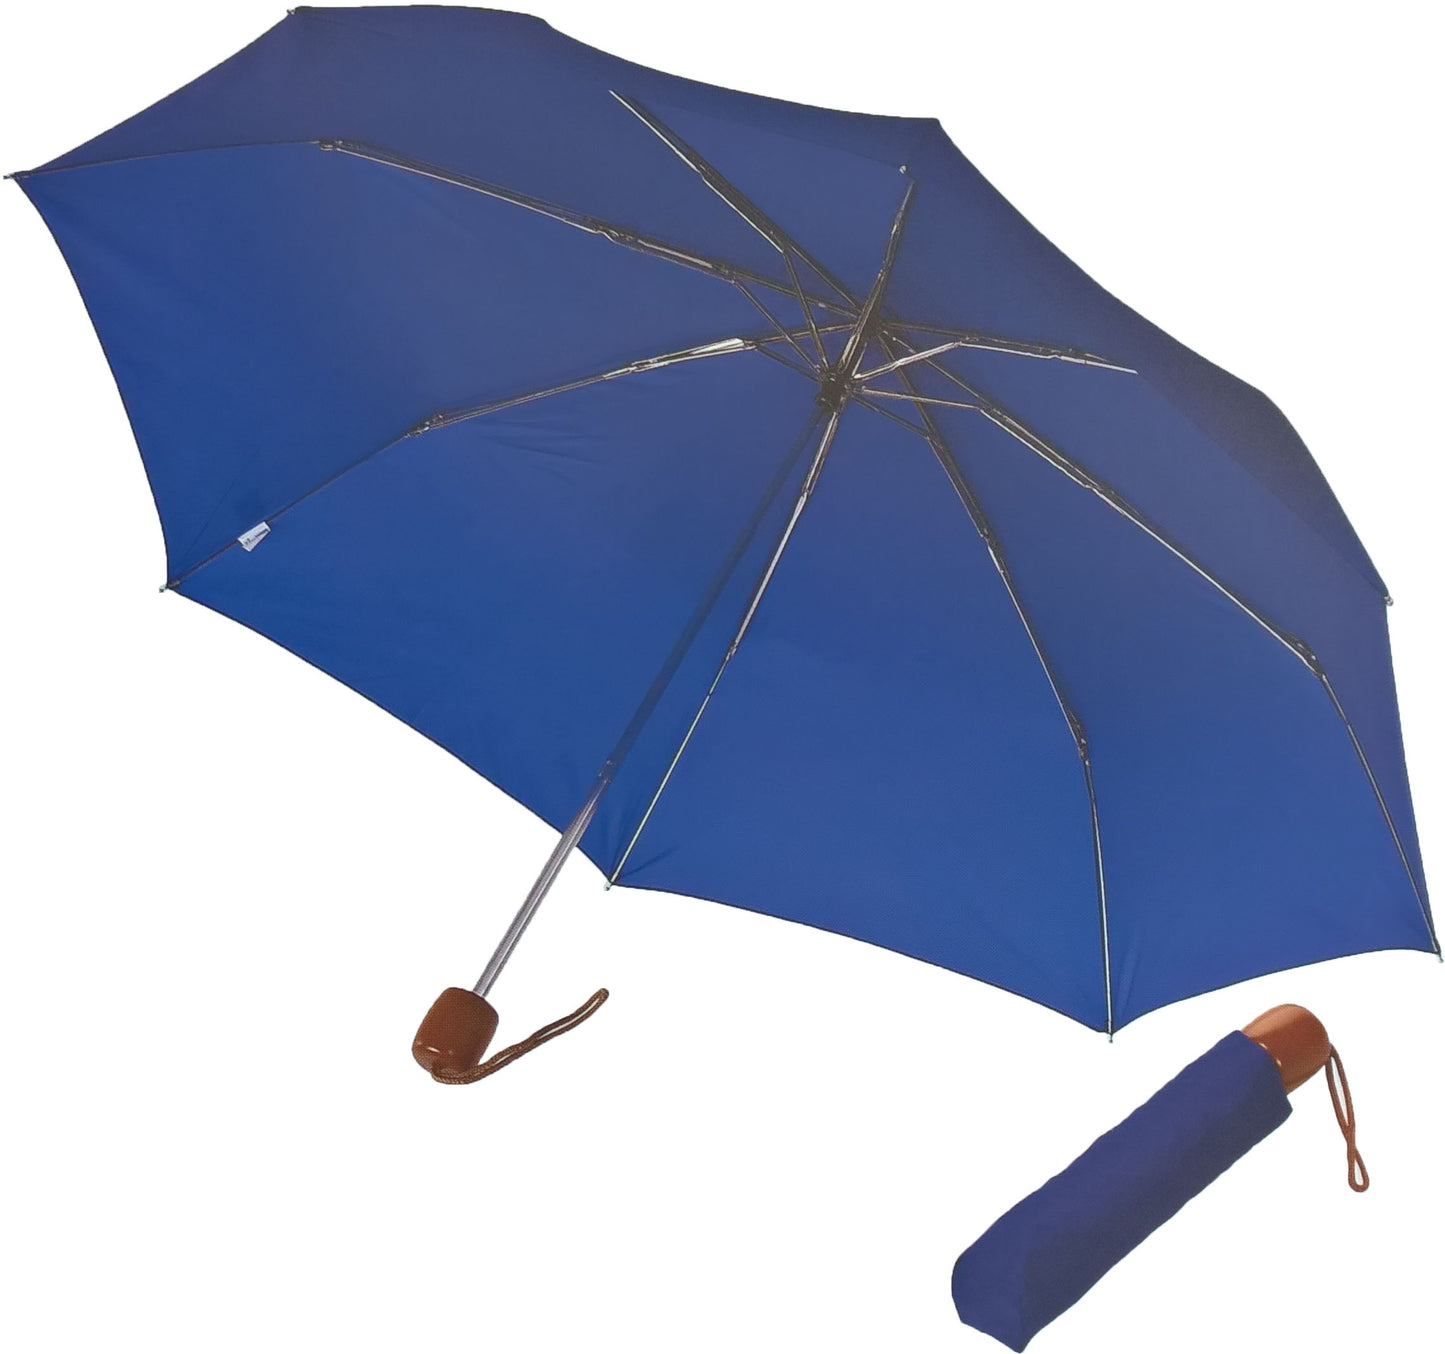 Μπλε μαρίν ομπρέλα βροχής, μίνι, με ξύλινη λαβή.